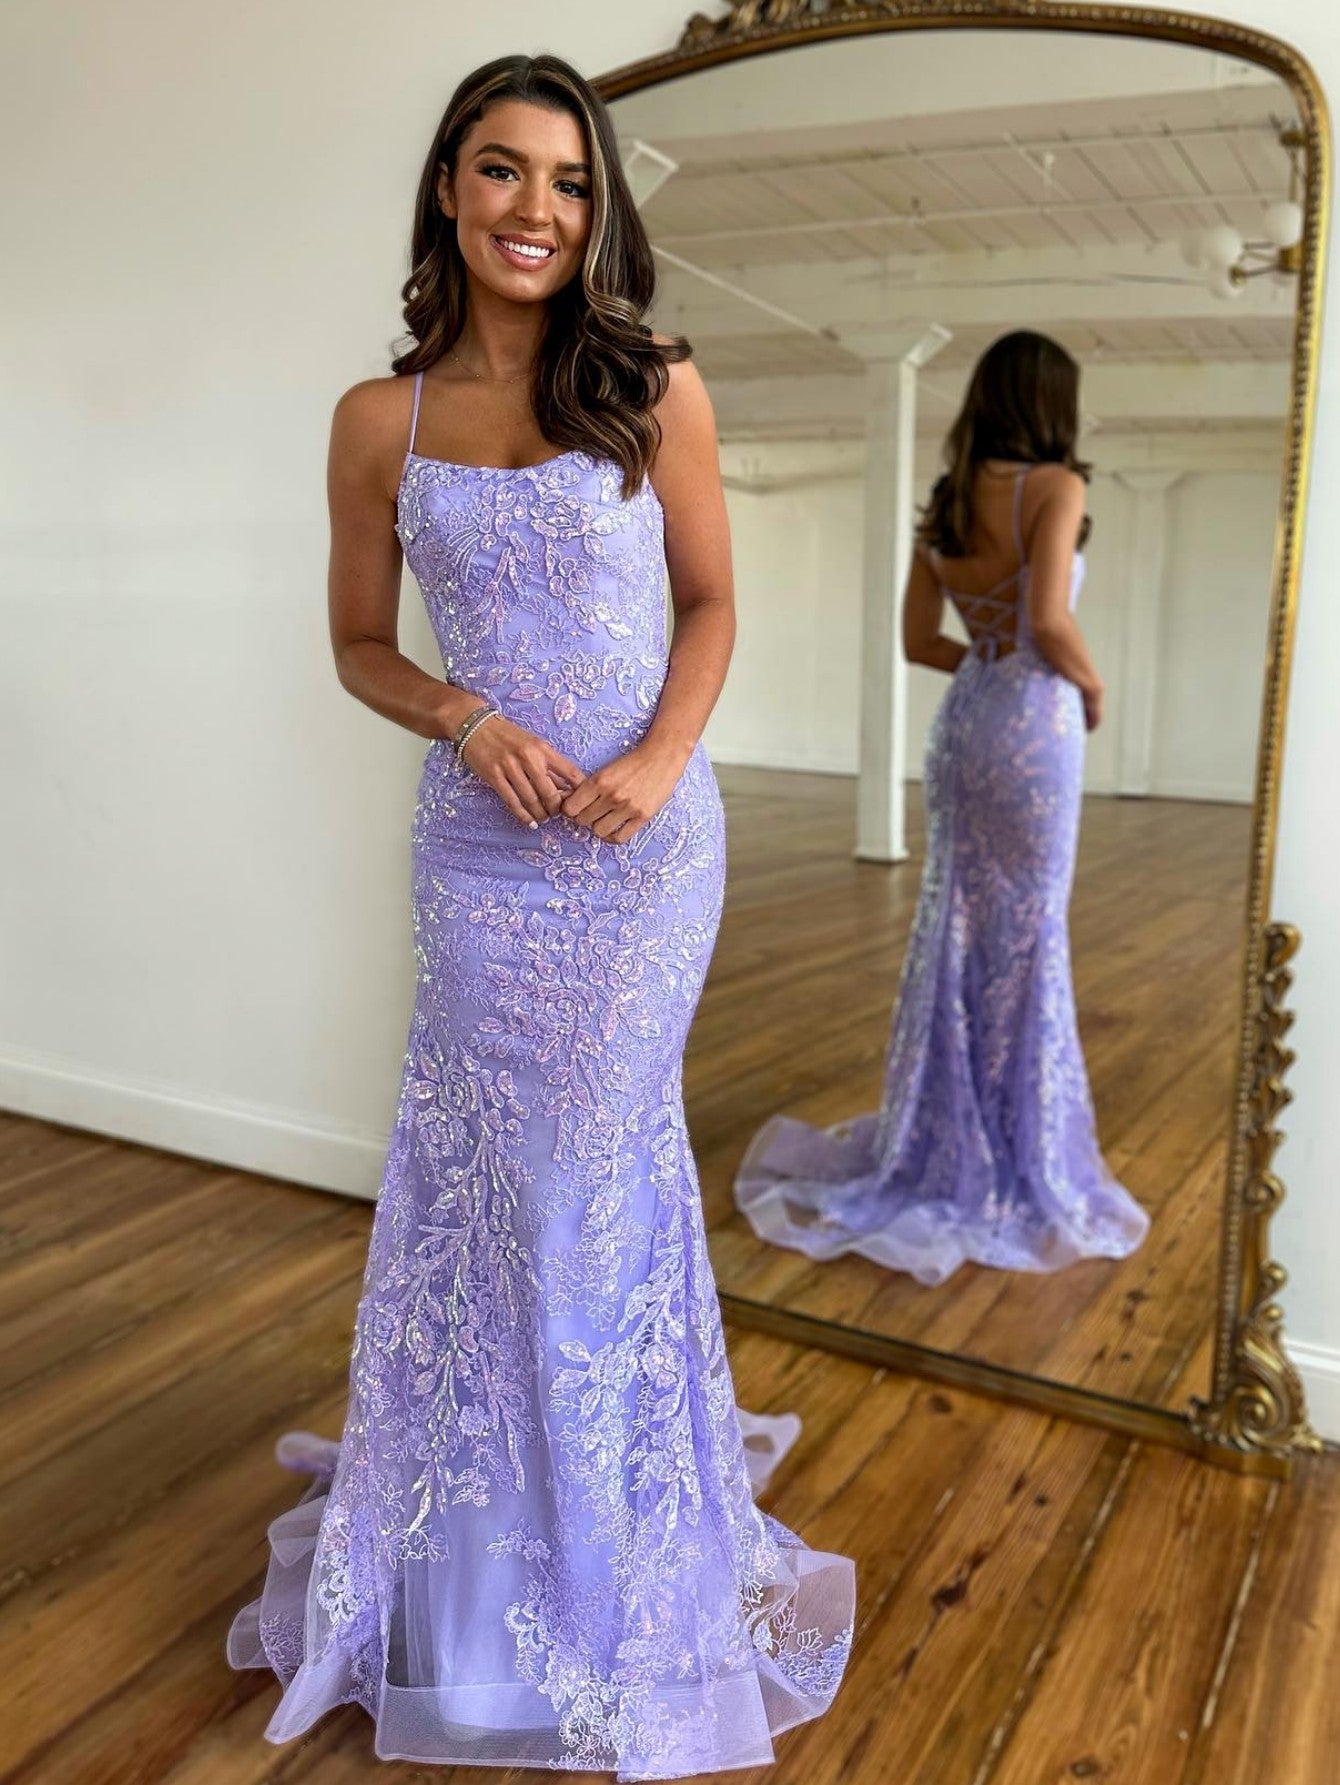 Astonishing Shine Purple Sequin Strapless Mermaid Maxi Dress  Best maxi  dresses, Cutout maxi dress, Beautiful prom dresses